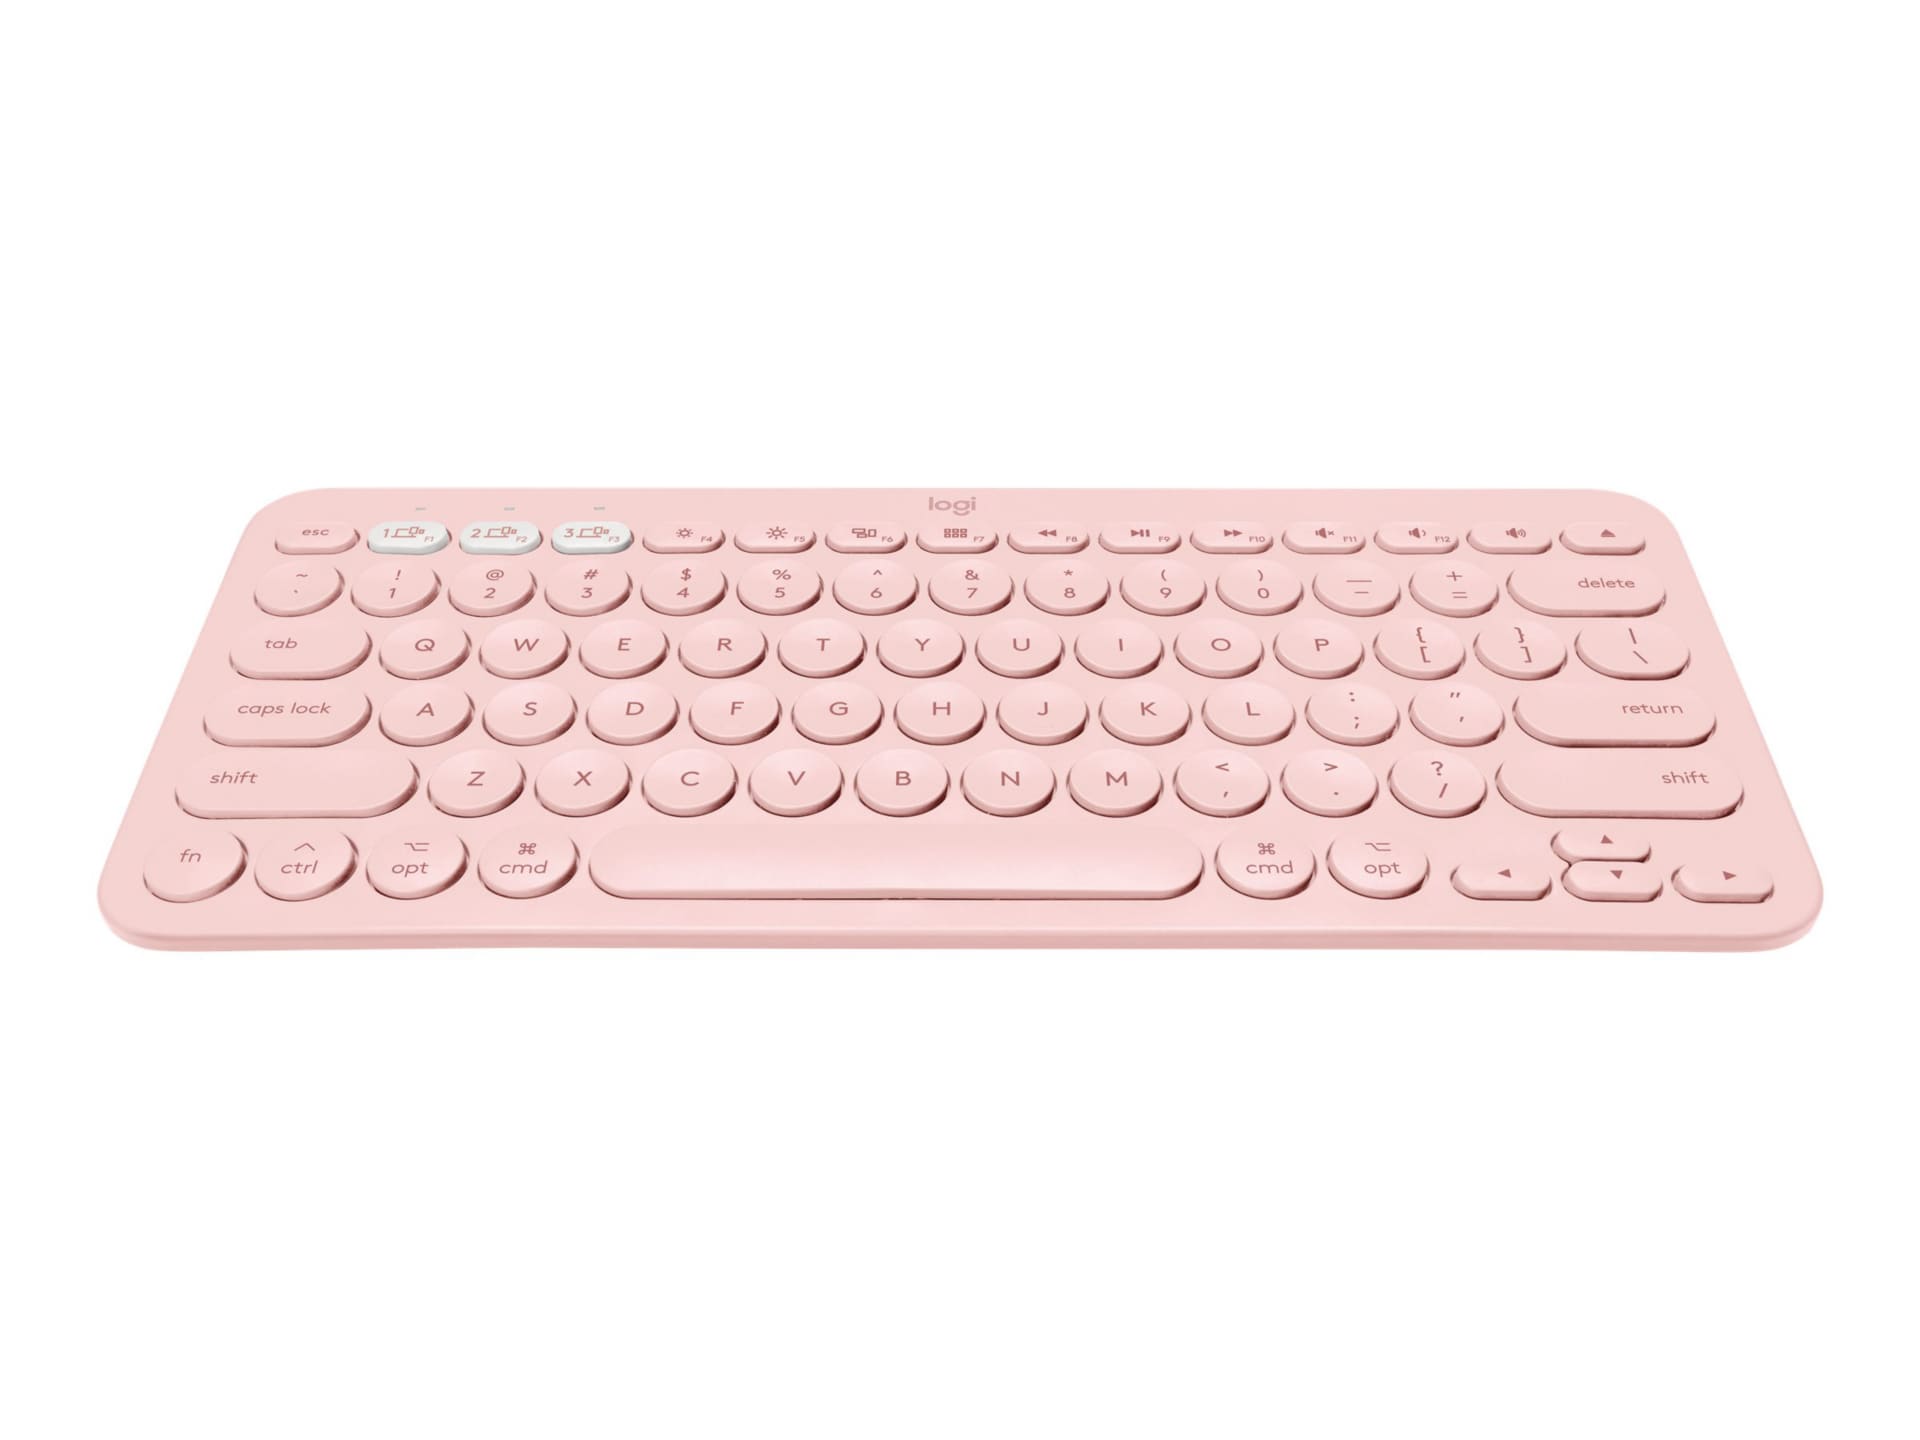 Logitech K380 Multi Device Bluetooth Keyboard For Mac Keyboard Rose 9 Keyboards Mice Cdwg Com